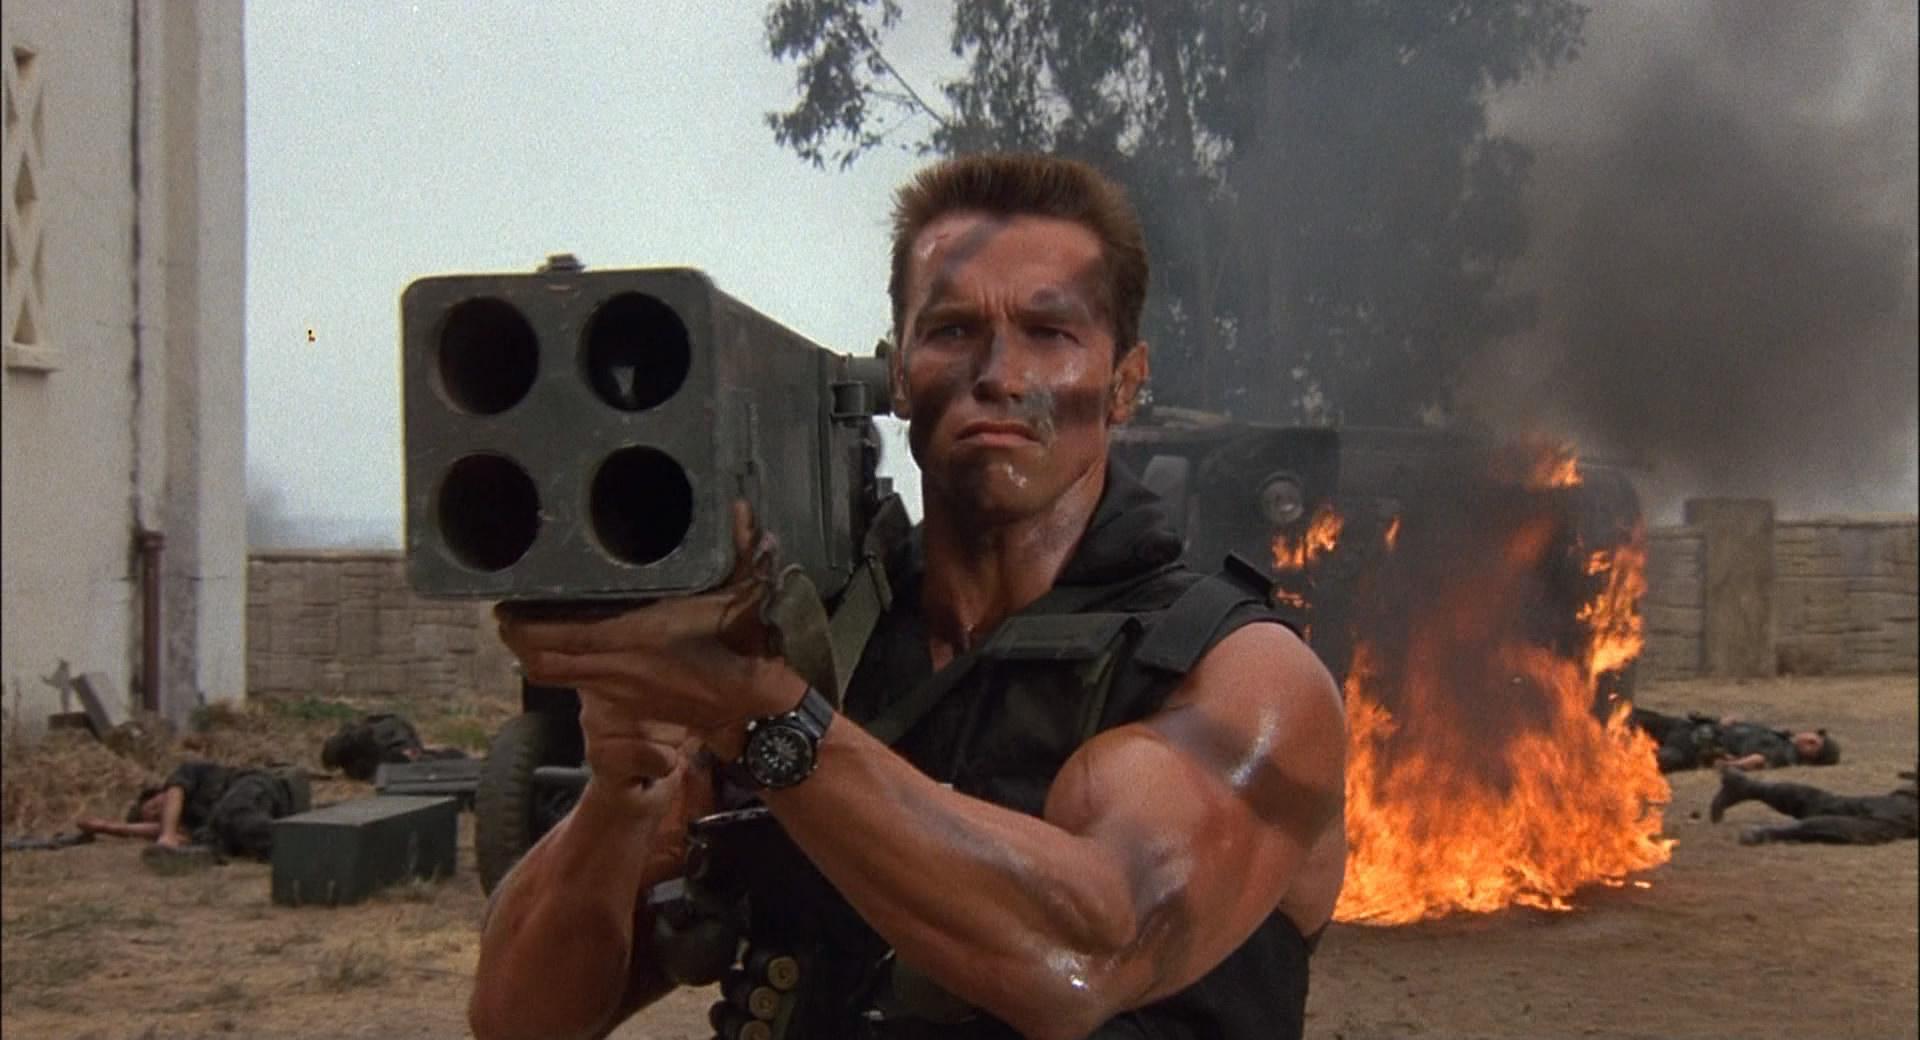 Arnold Schwarzenegger - Commando